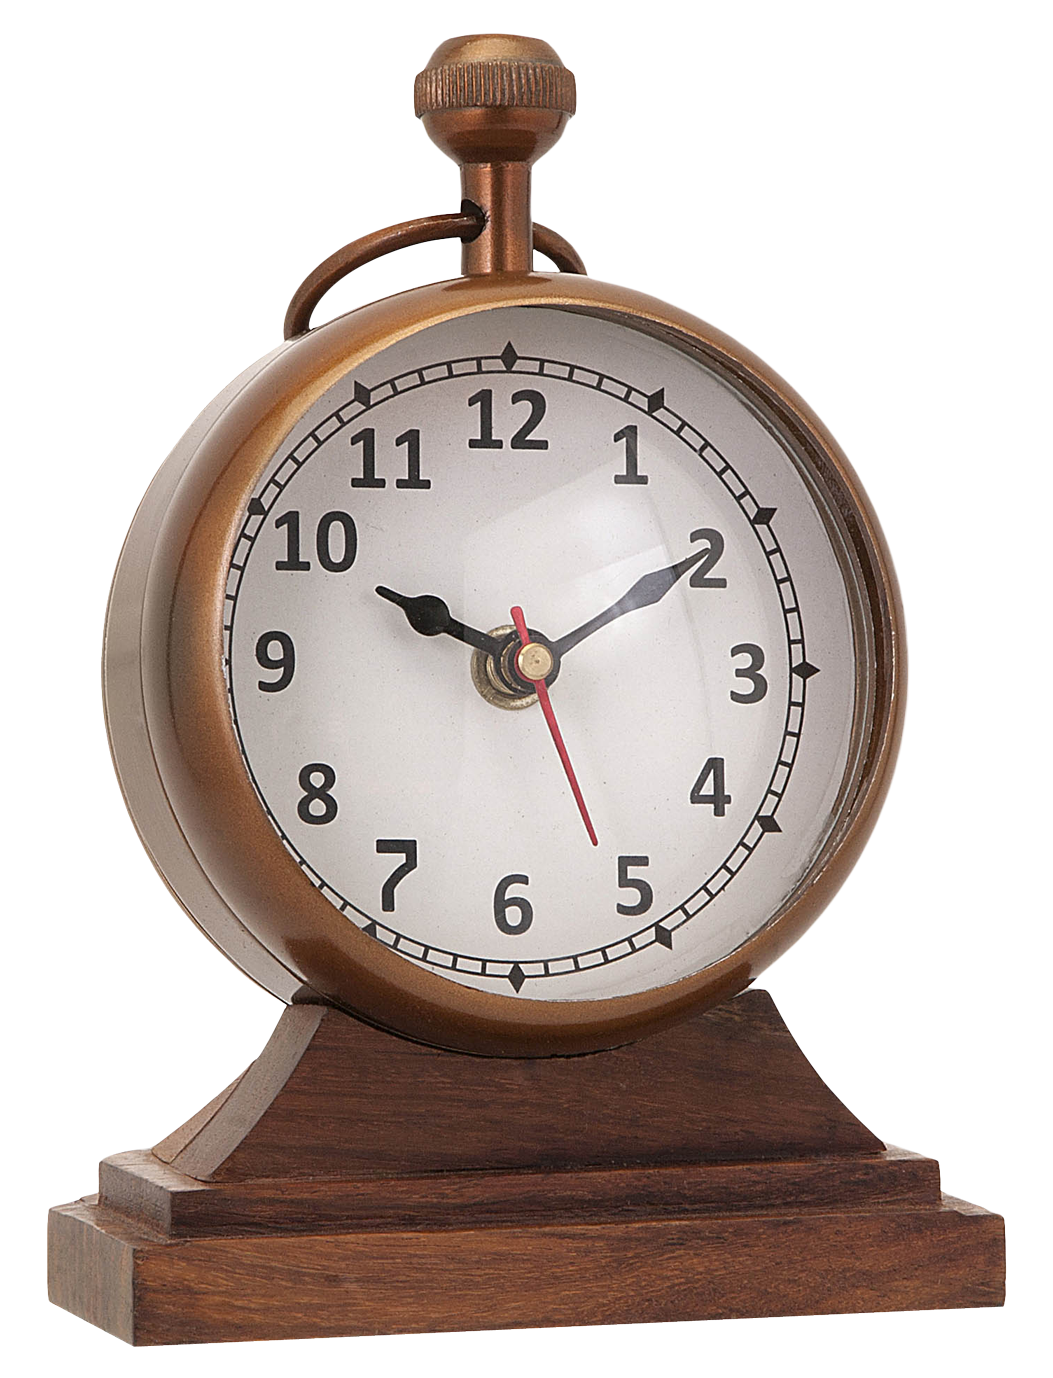 Intercom Klaxon Electronics Clock Alarm PNG